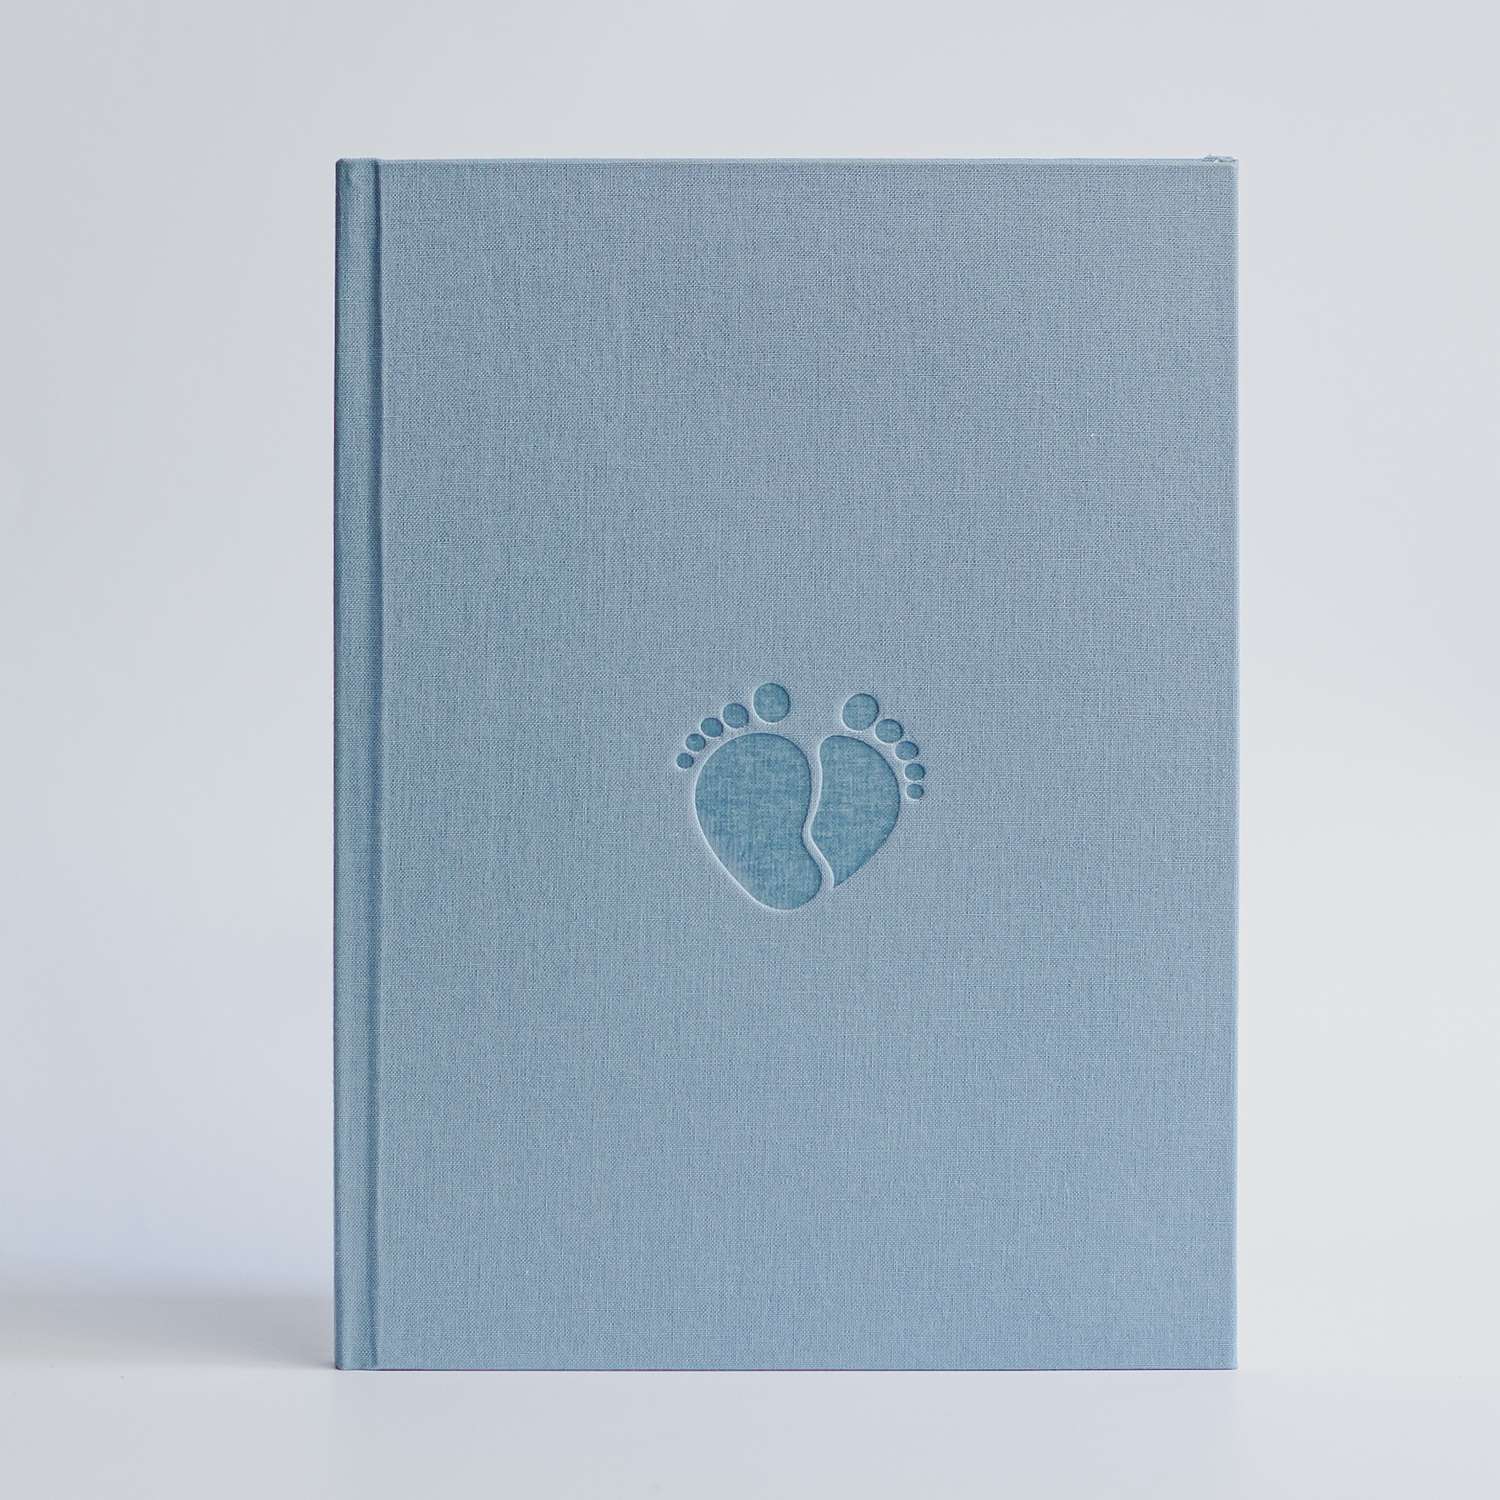 Фотоальбом-дневник Moms Book Первый альбом малыша. Серо-голубой. Для мальчика. Текстиль - фото 1